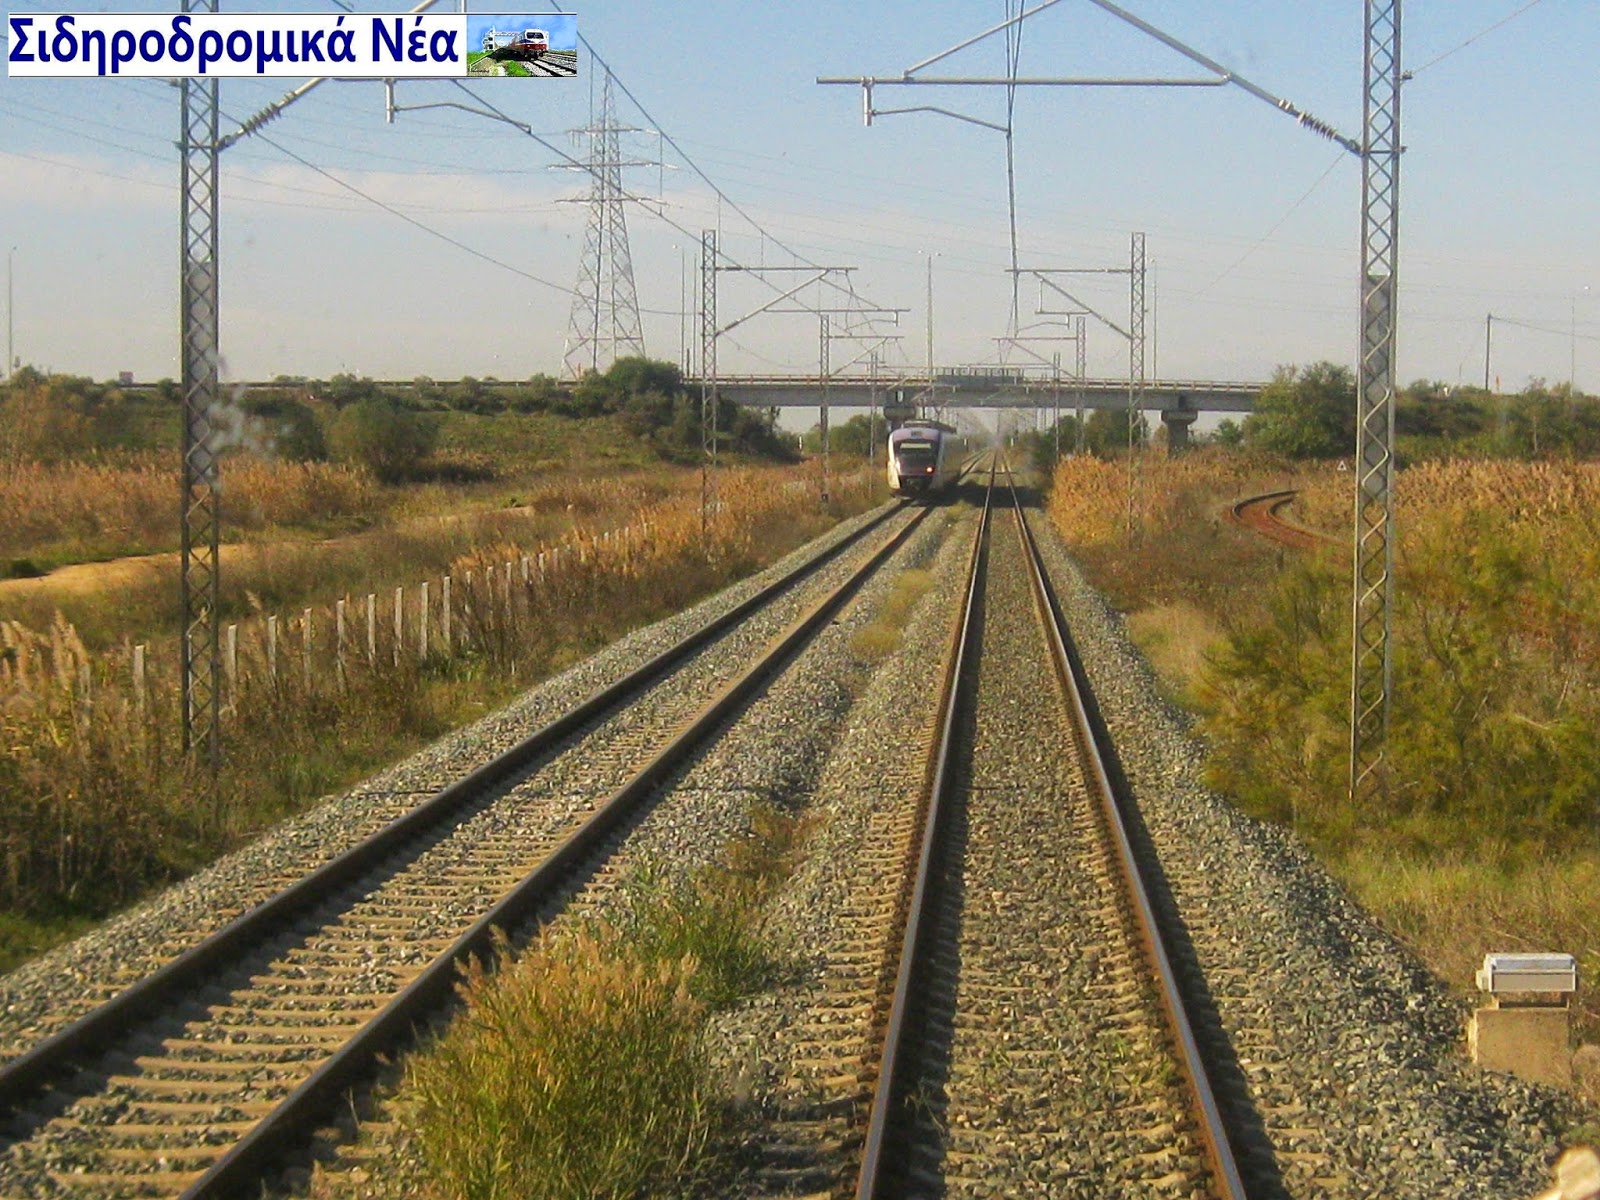 Σύσκεψη των δύο συλλόγων φίλων σιδηροδρόμου Τρικάλων και Καρδίτσας για τις τελευταίες εξελίξεις στον σιδηρόδρομο της δυτικής Θεσσαλίας. - Φωτογραφία 1